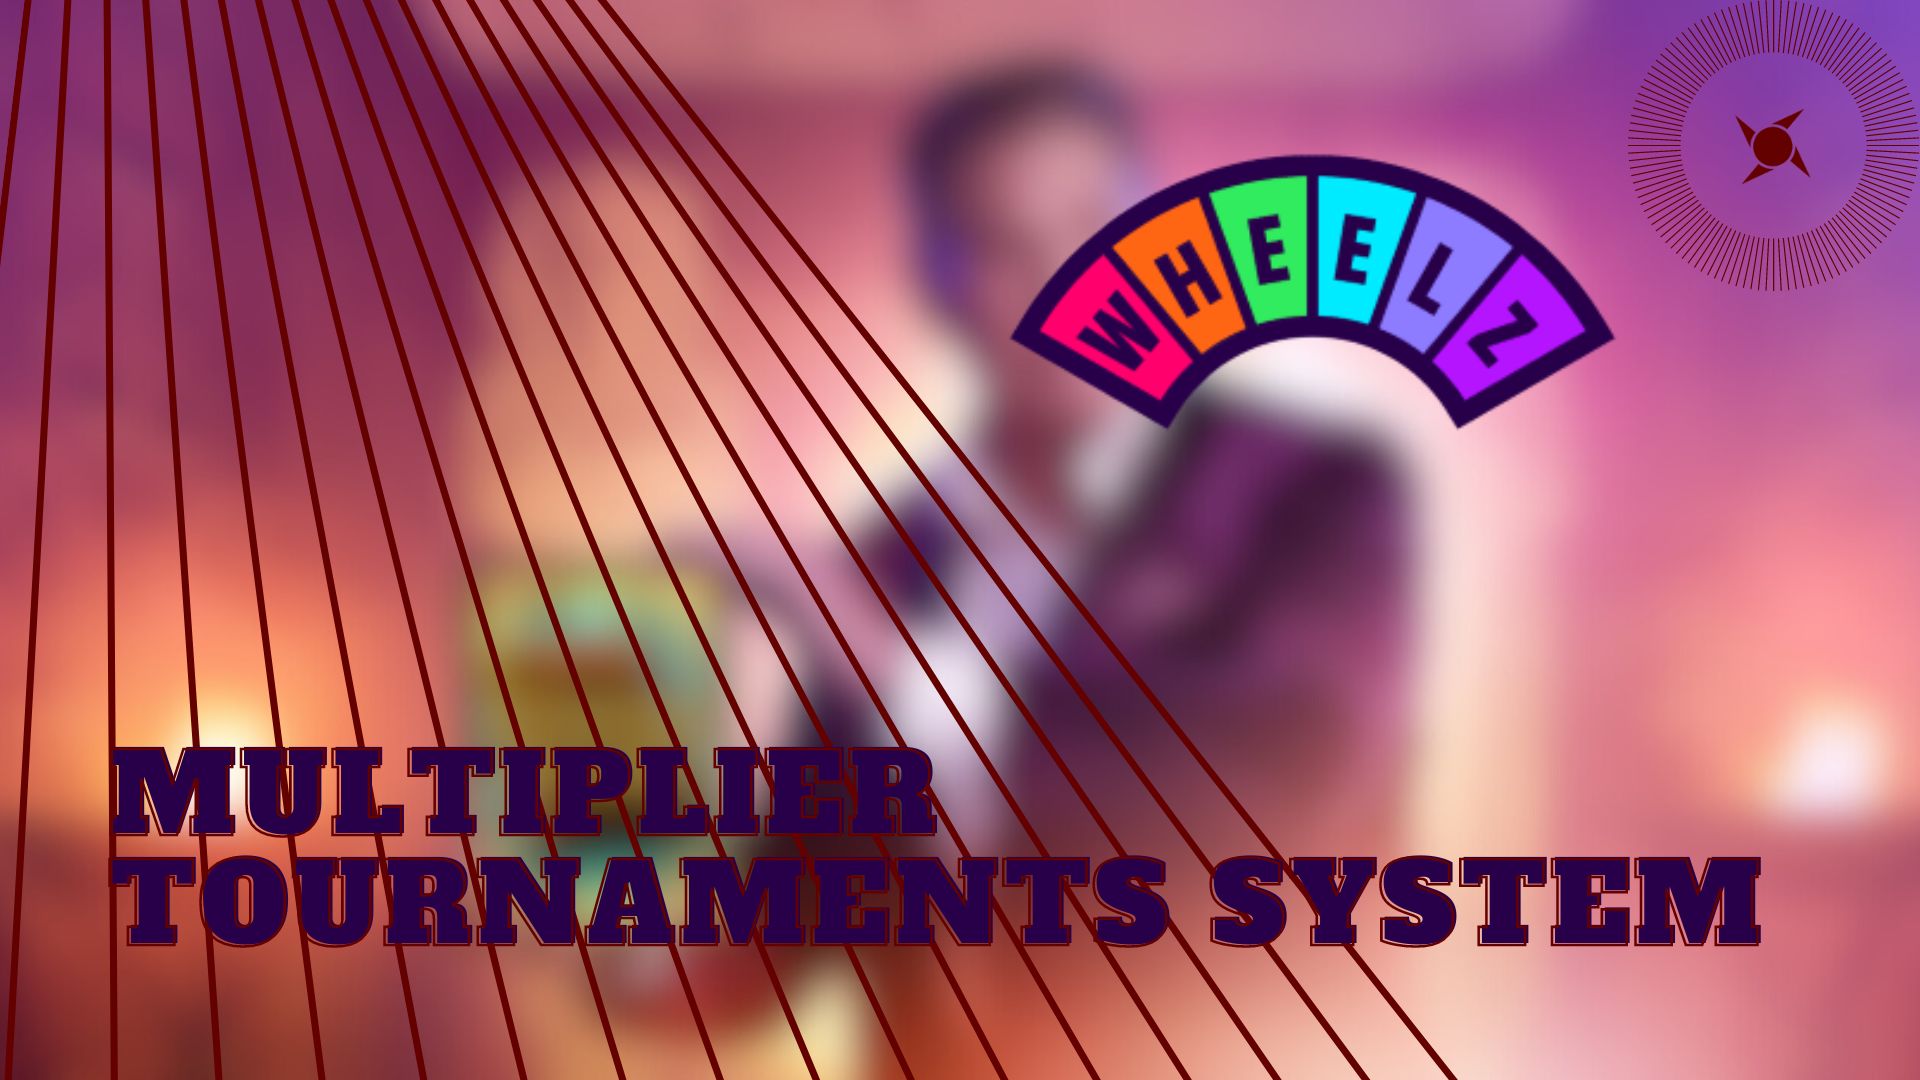 Tournaments that utilize a multiplier system